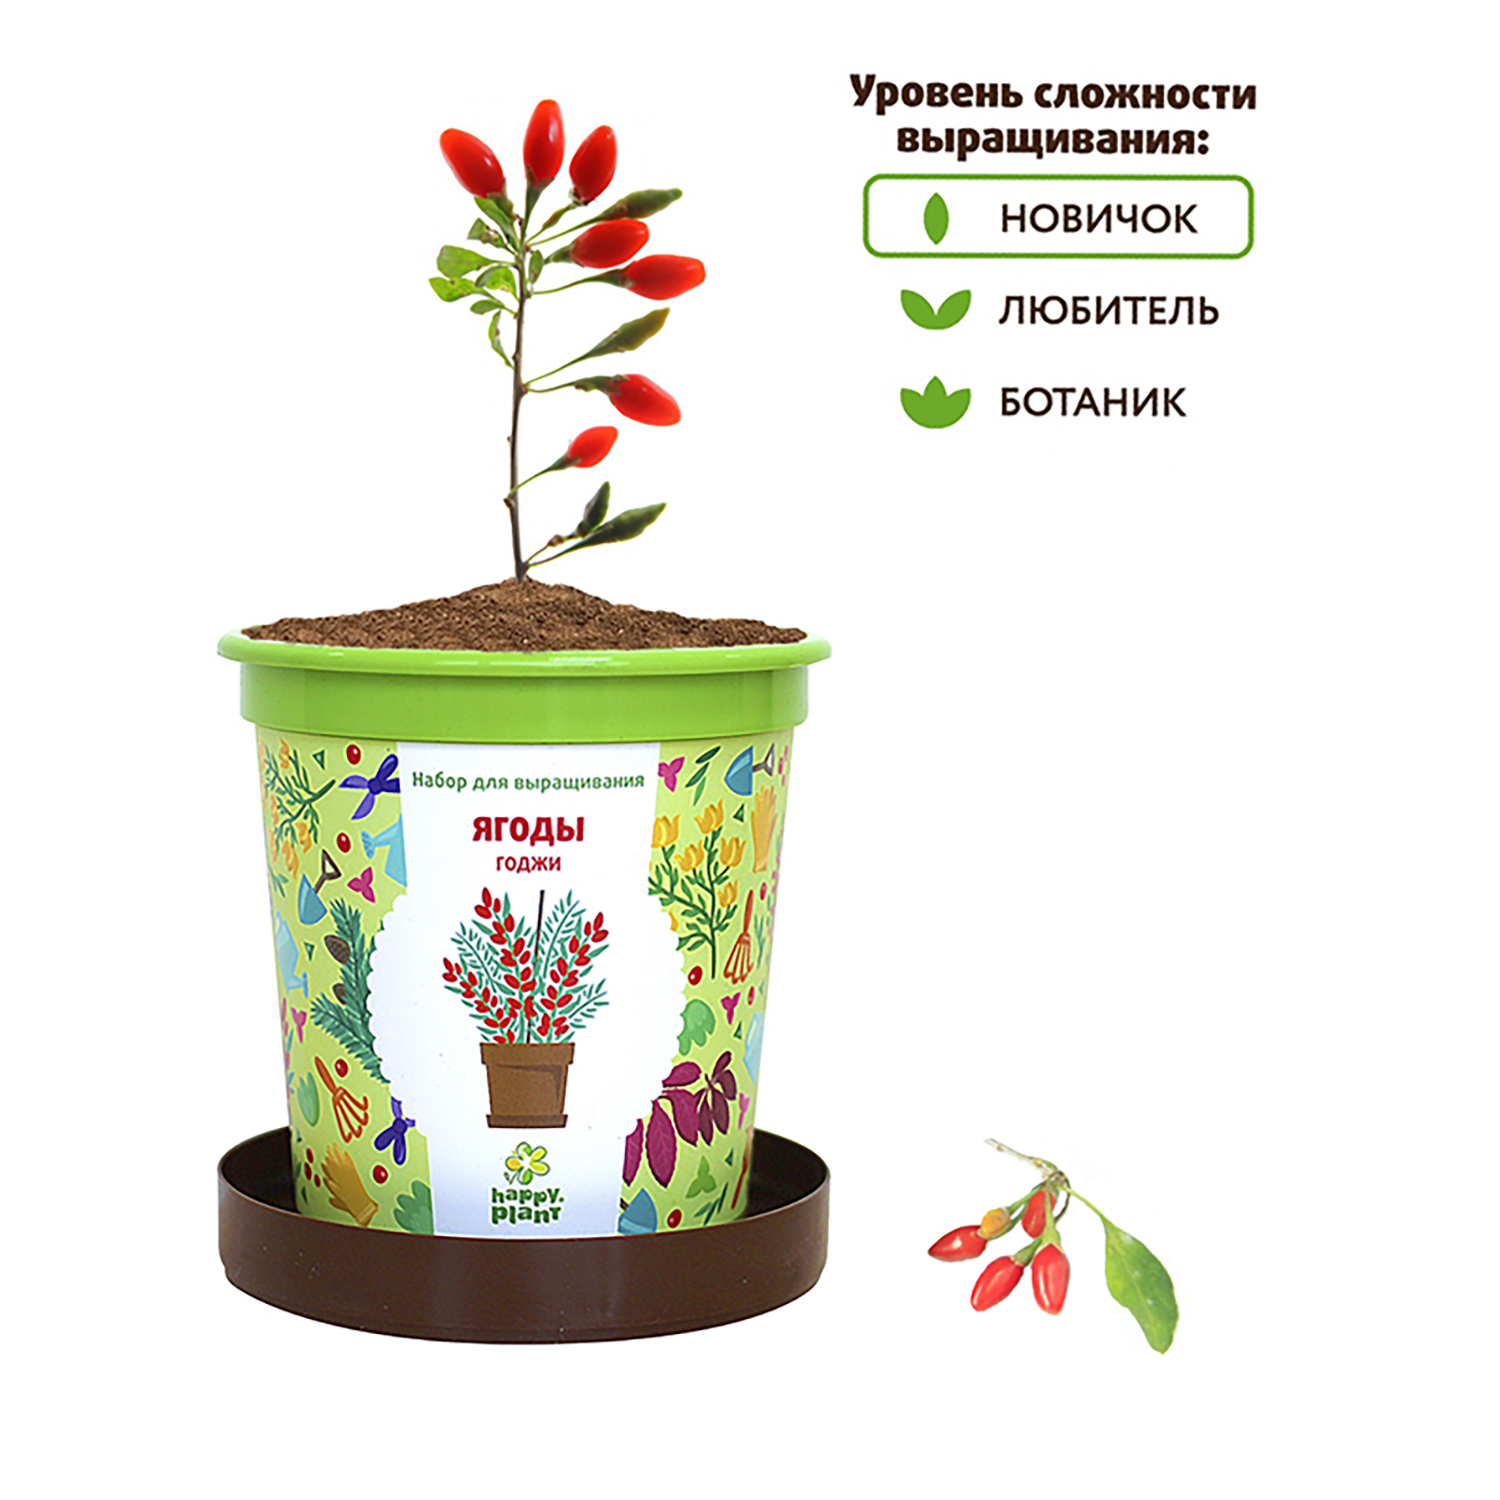 Набор для выращивания Happy Plant Вырасти сам растение в горшочке Ягоды Годжи - фото 5